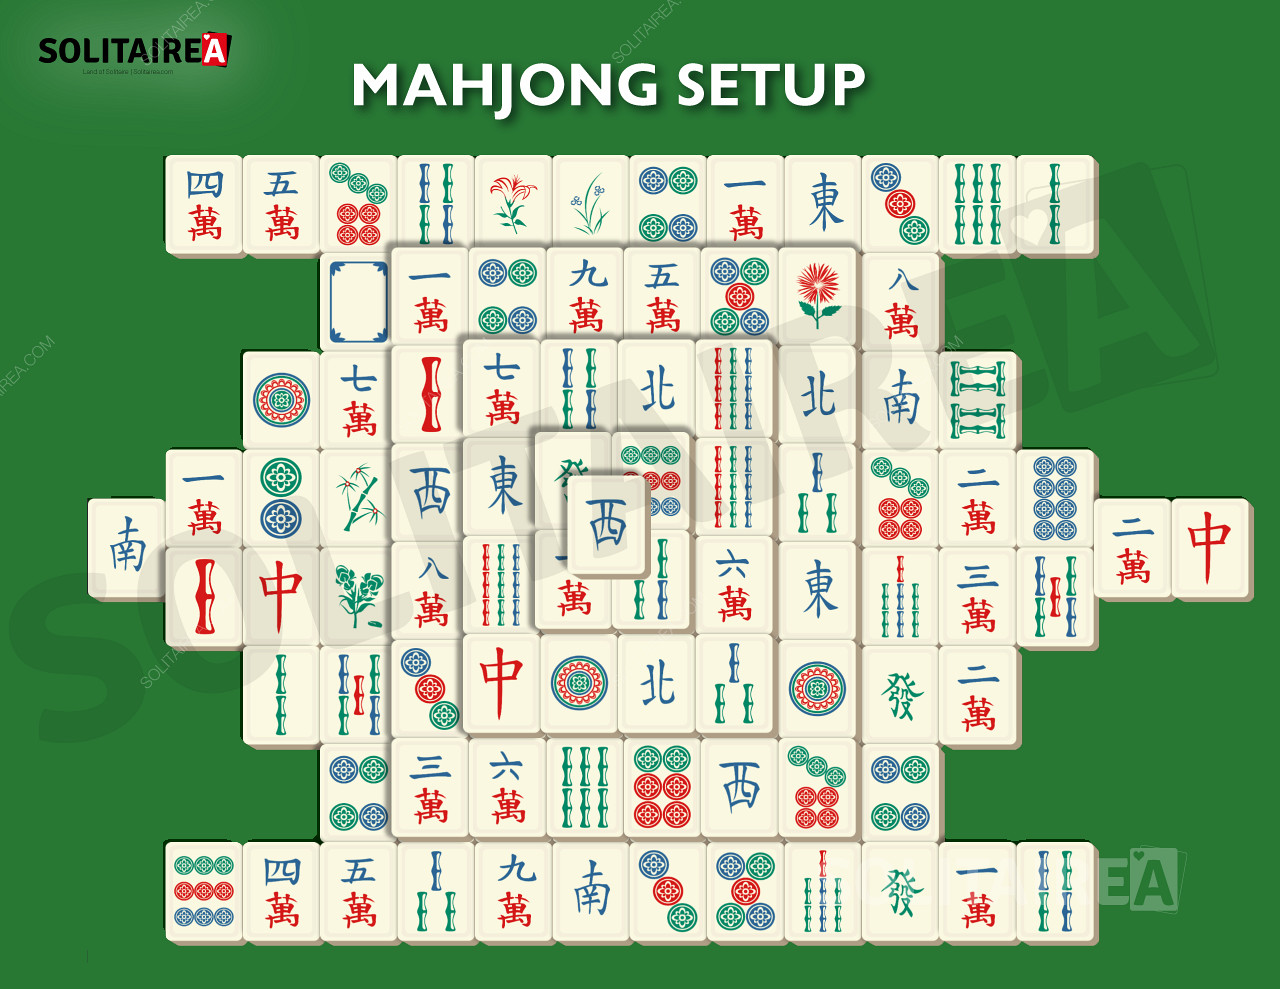 Imagen que muestra la configuración del Solitario Mahjong.